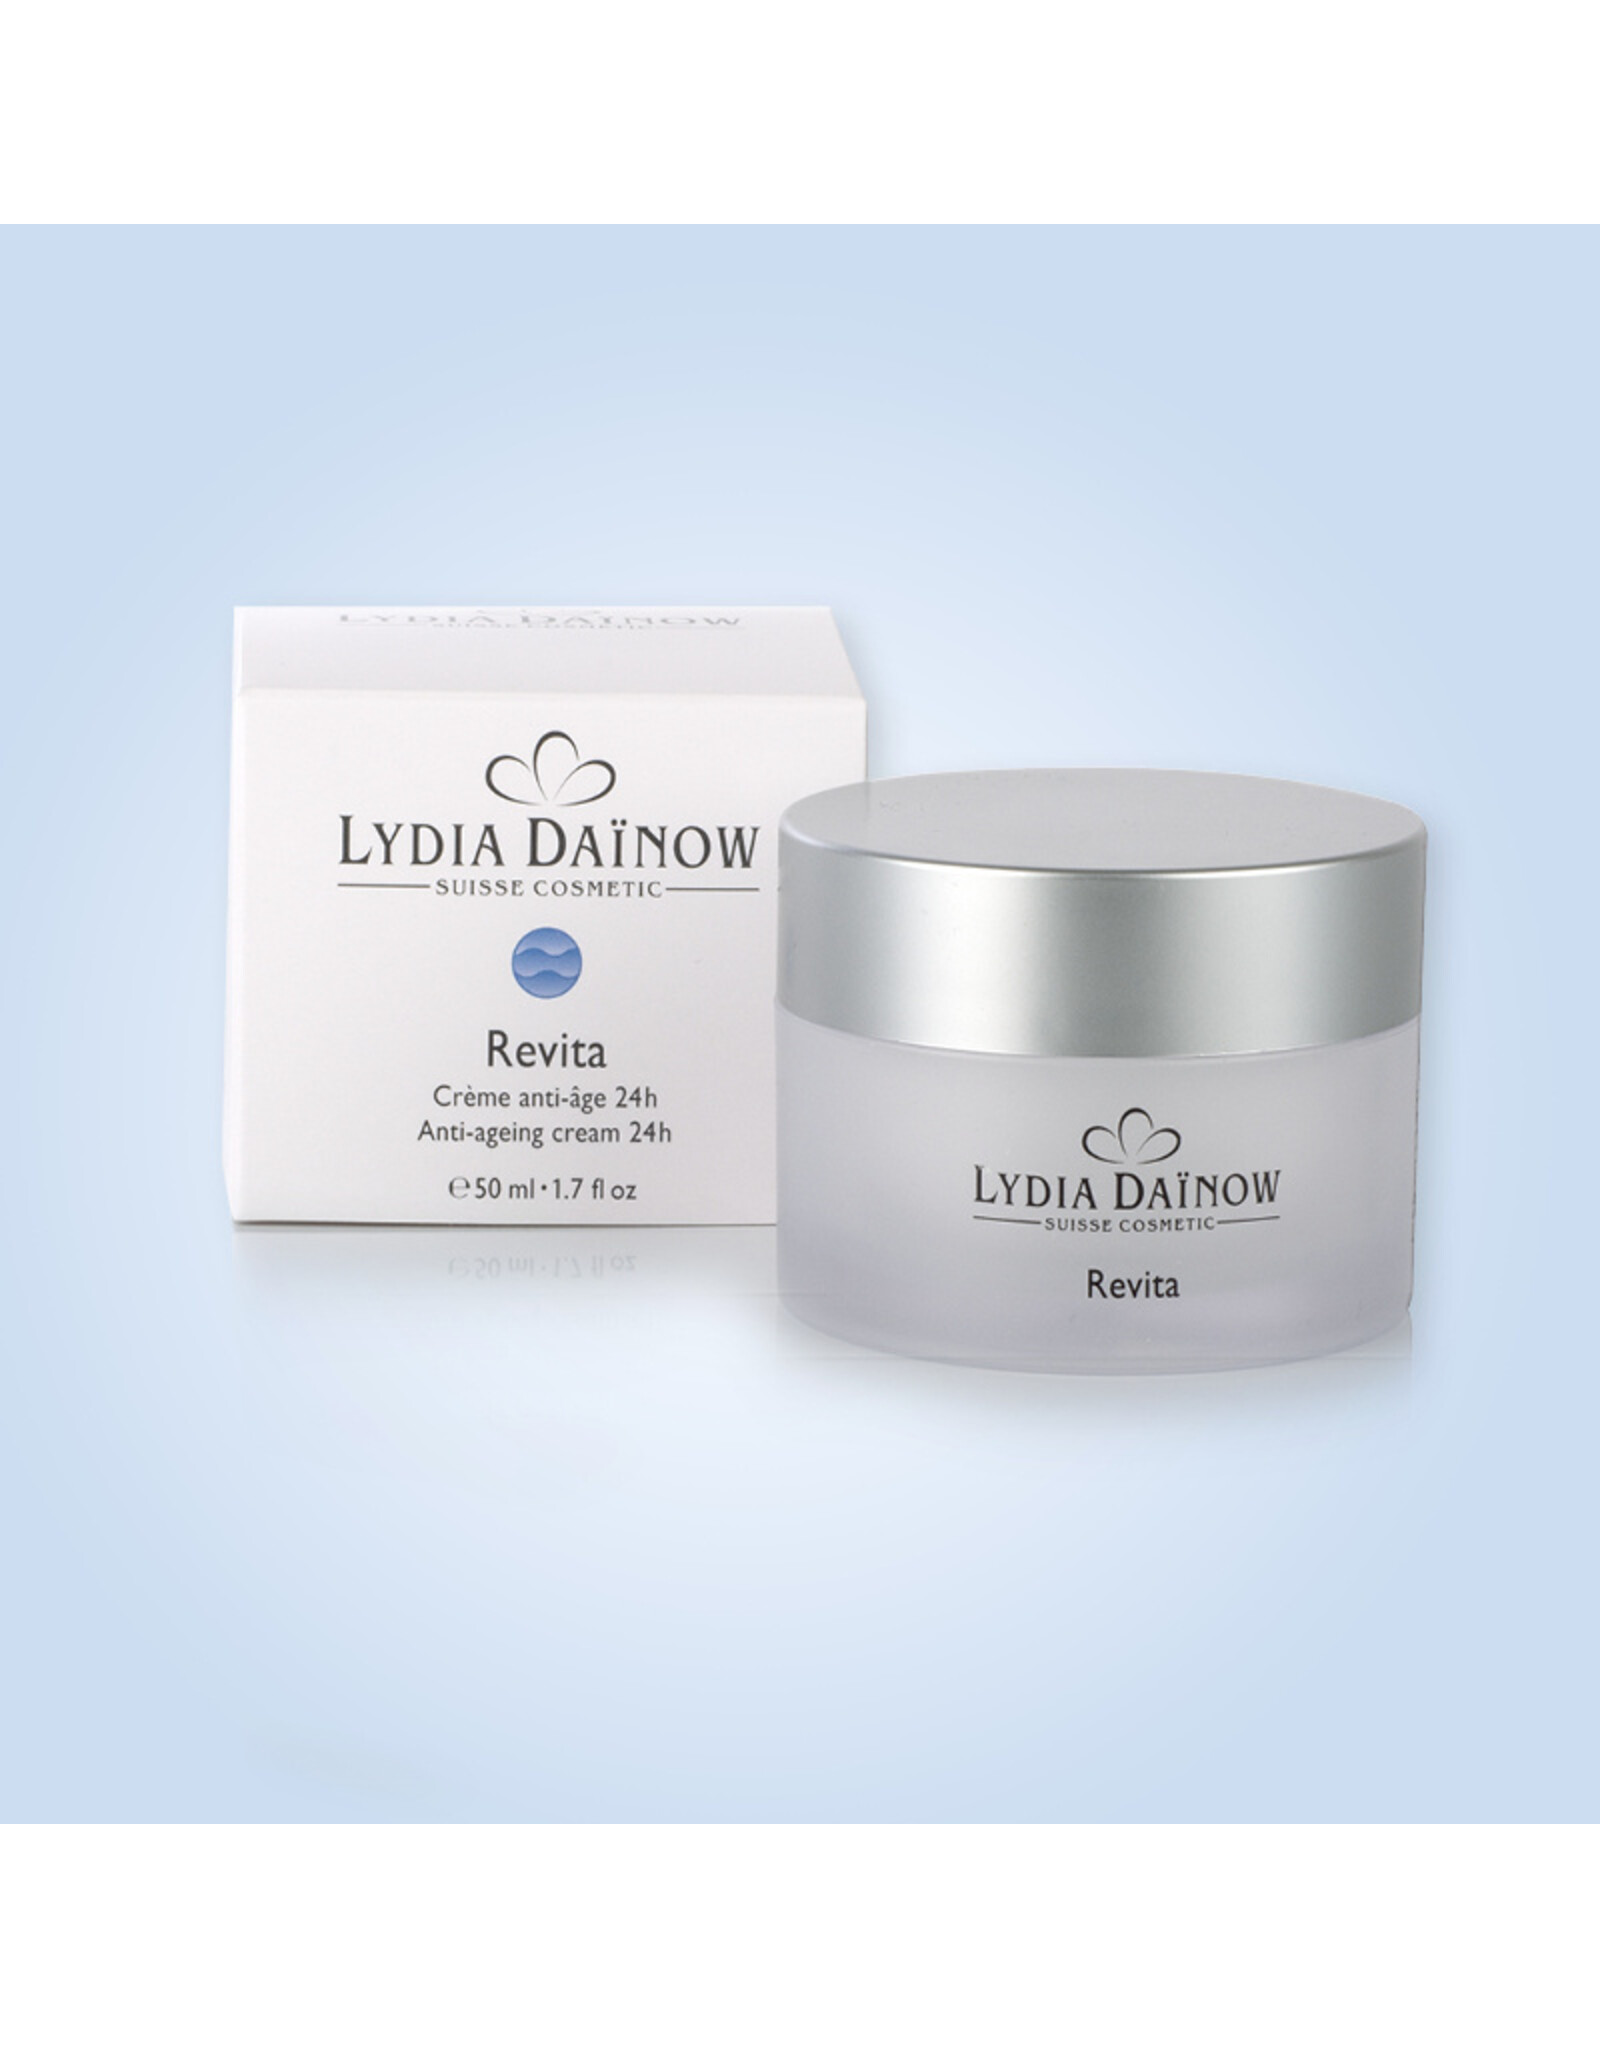 Lydïa Dainow Revita Cream - Anti-aging cream with Q10